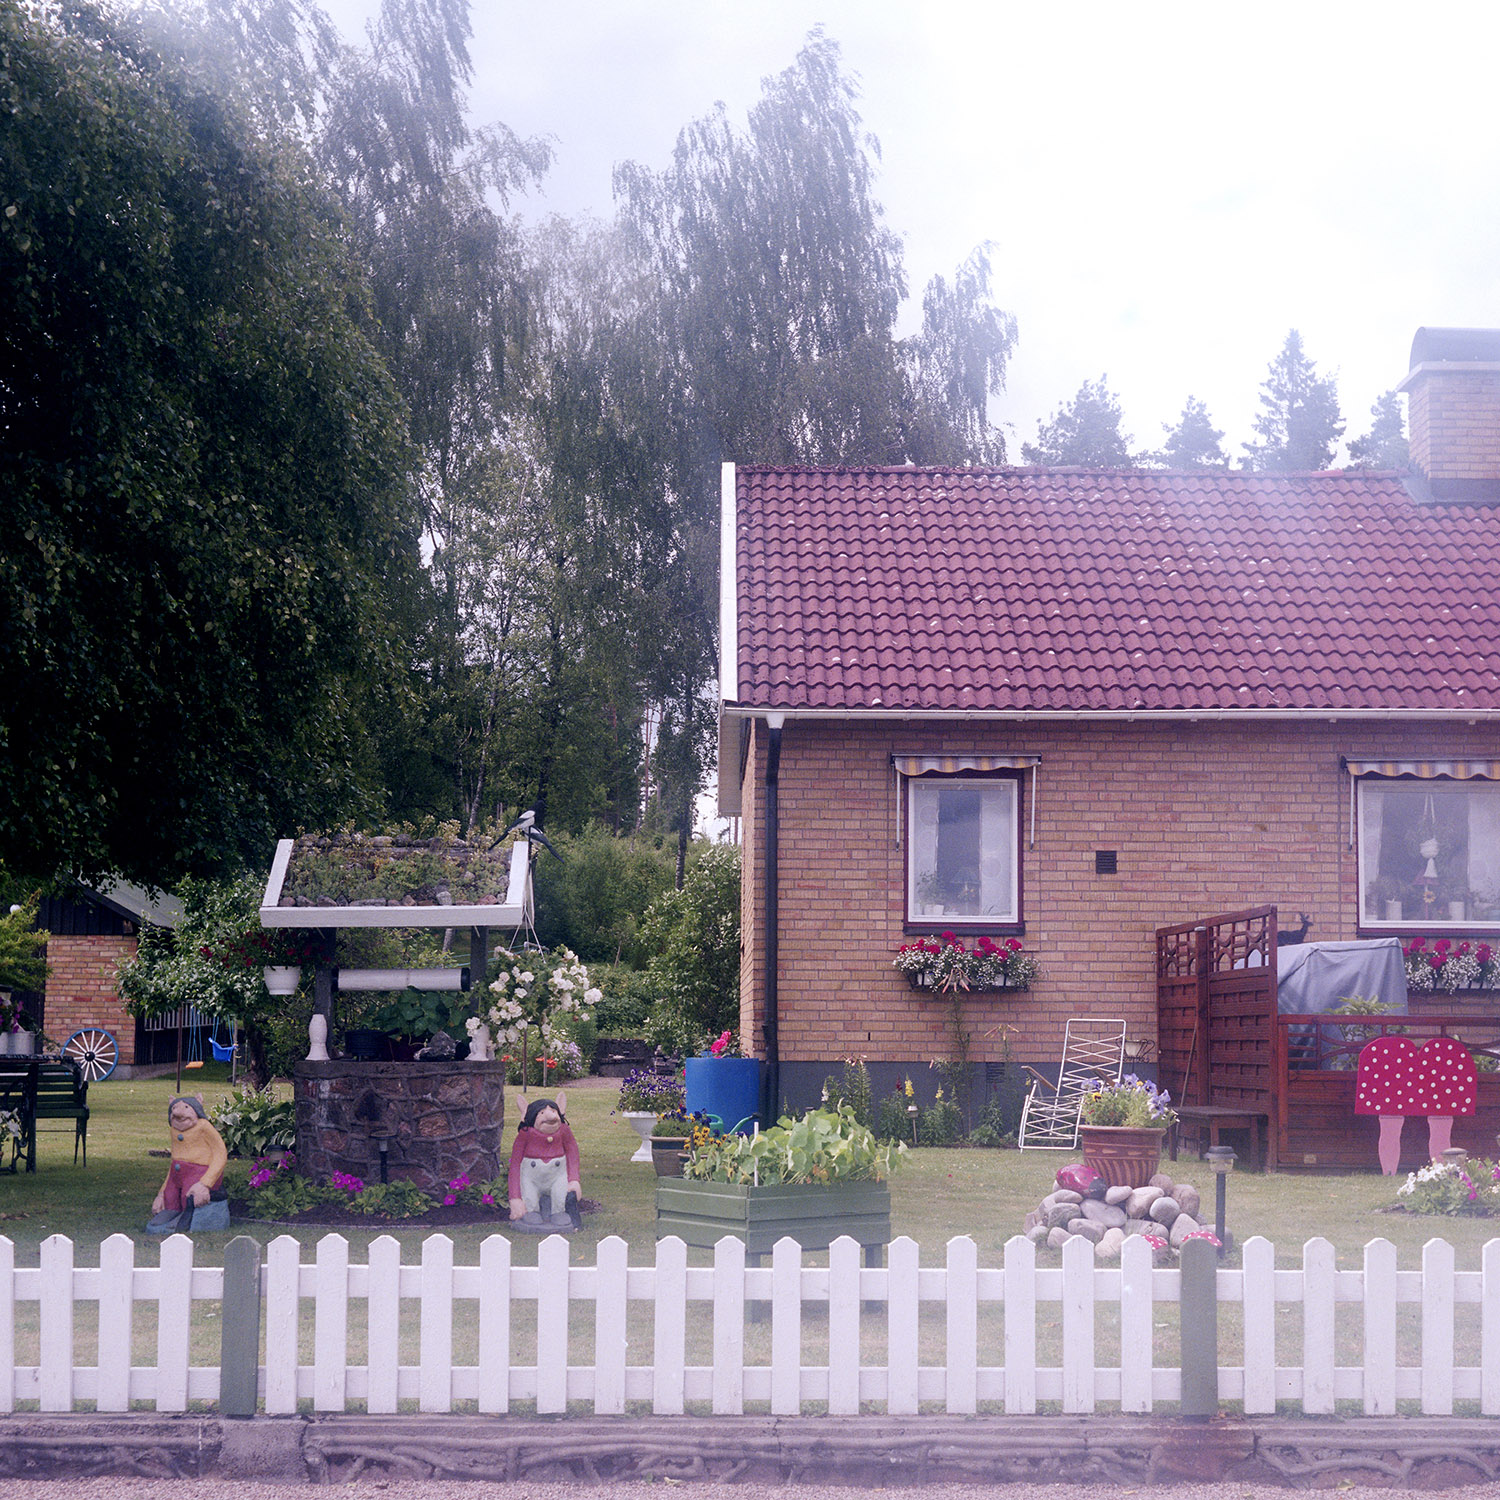   Ljungby i Småland har problem med oknytt.&nbsp;  